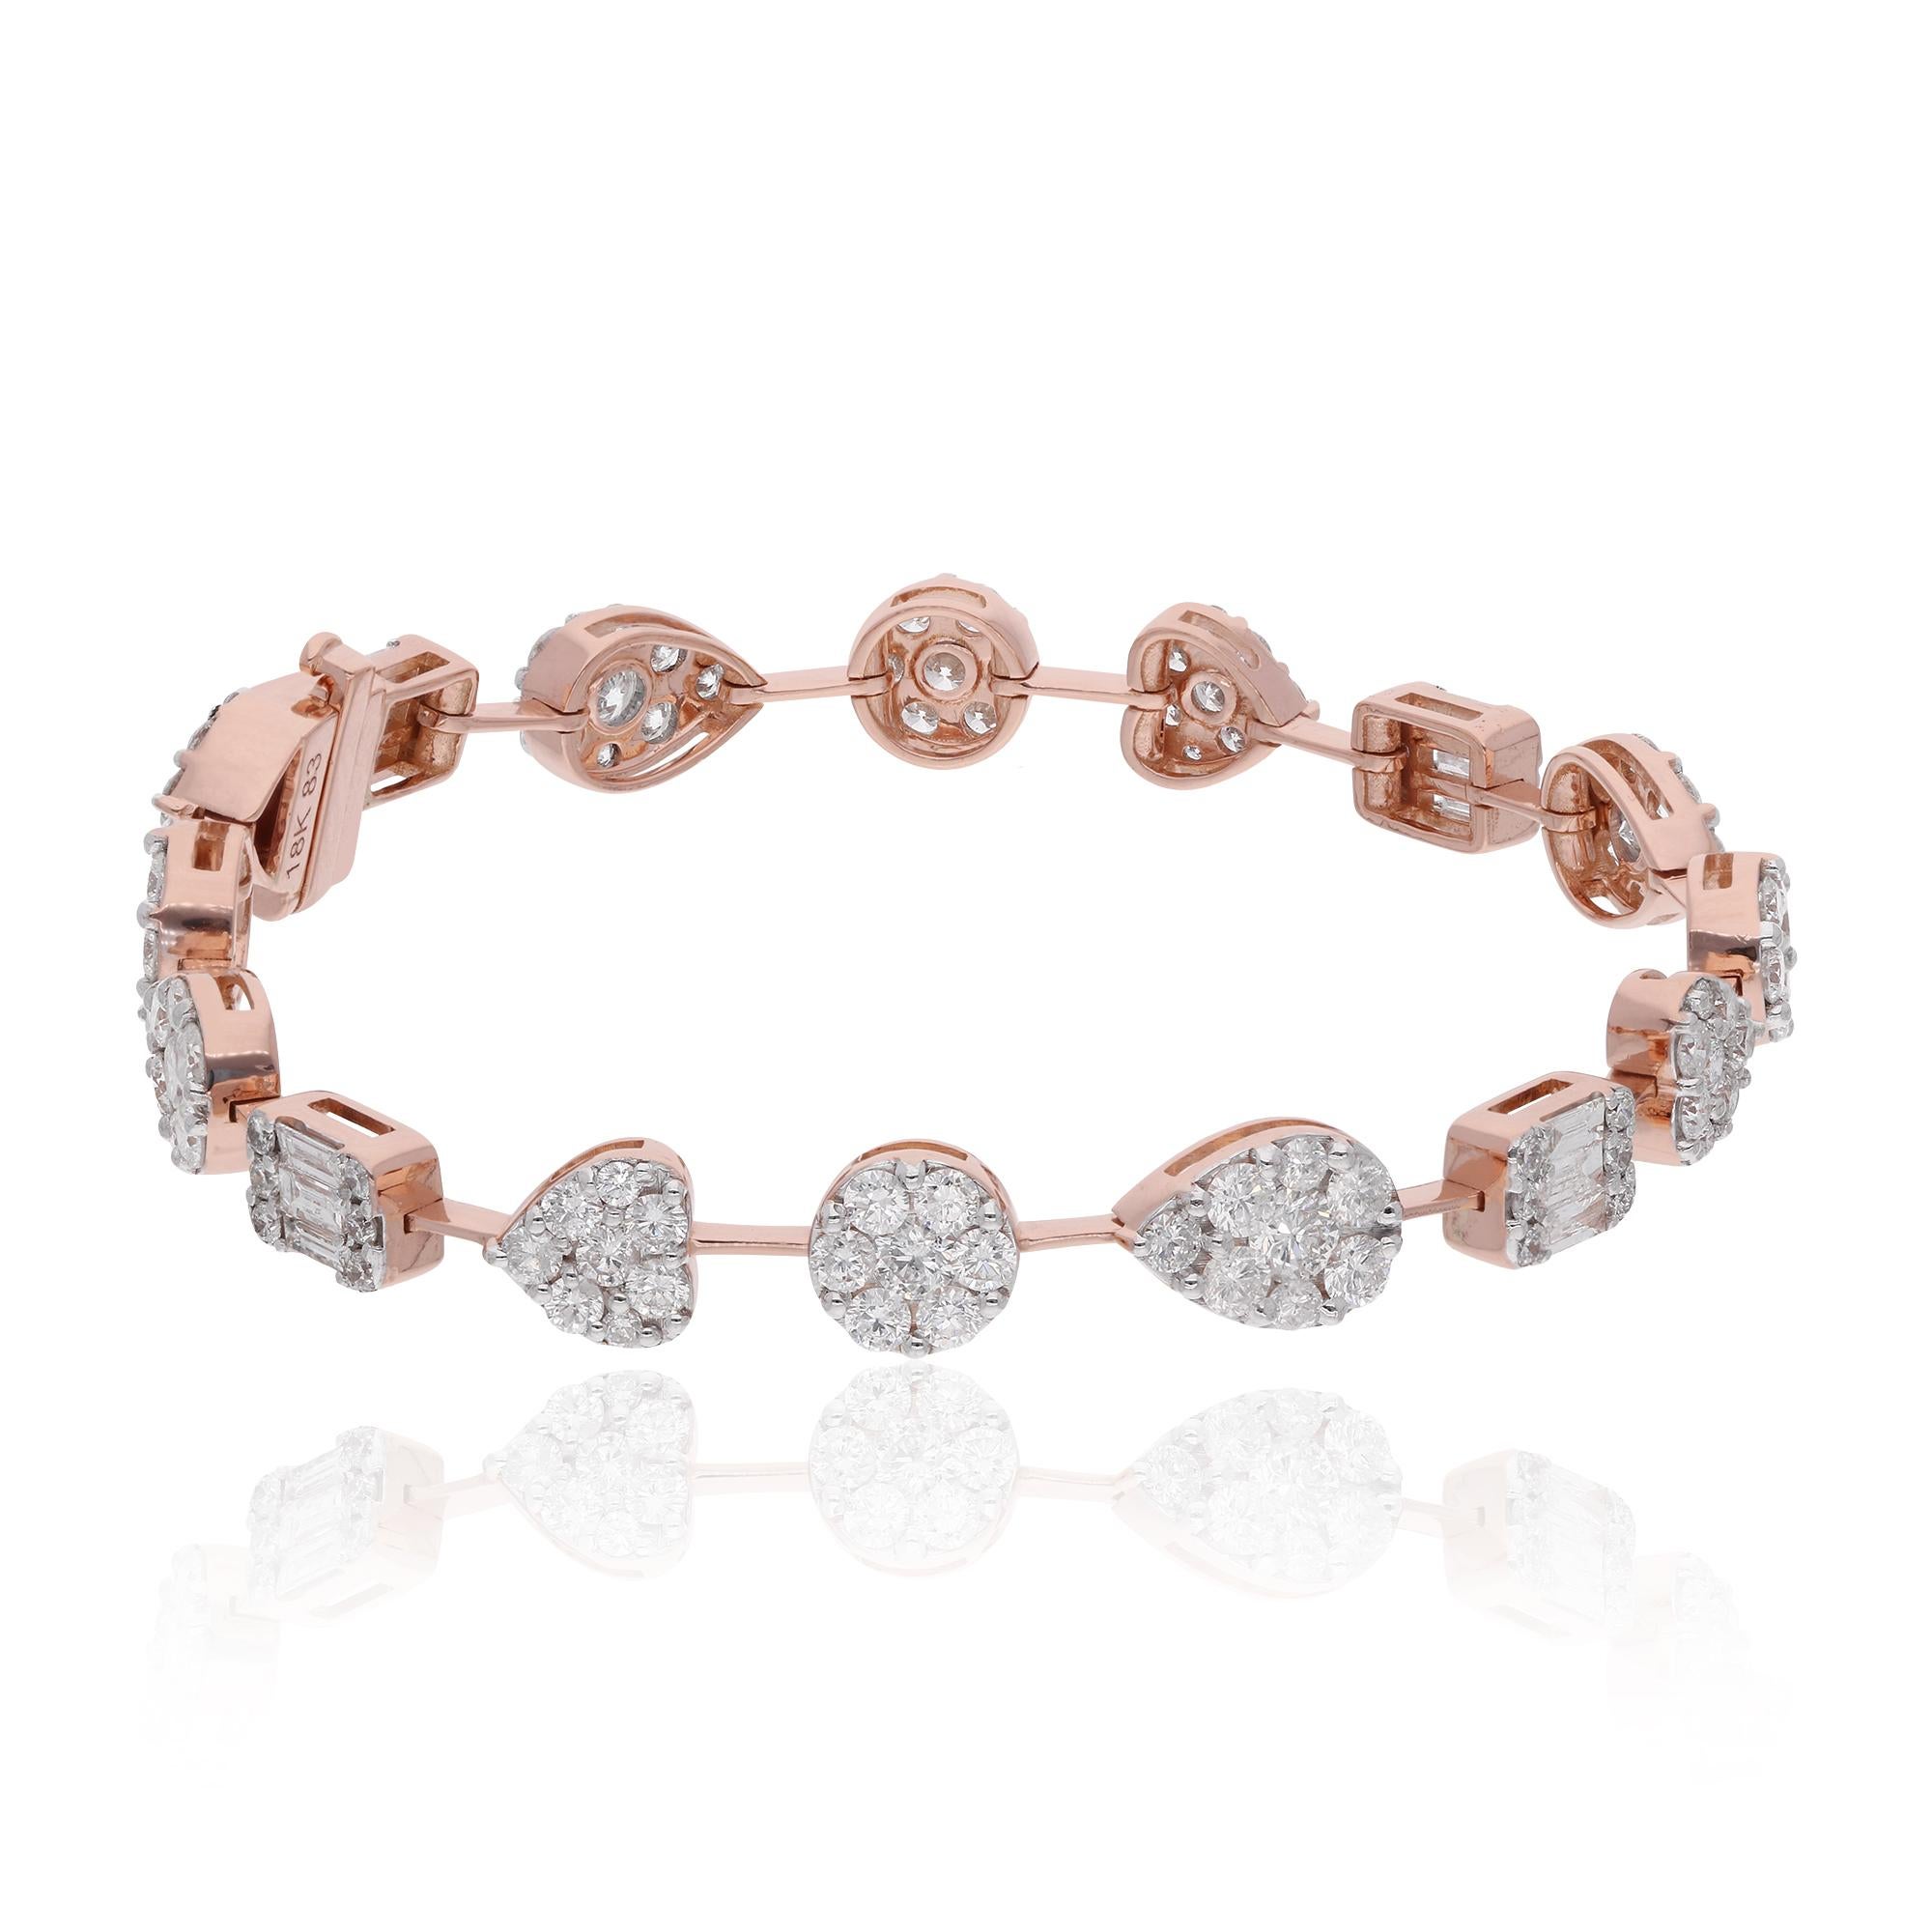 Erhöhen Sie Ihren Stil mit unserem exquisiten Diamantarmband aus 18 Karat Roségold. Die schillernden Diamanten sind in luxuriöses Roségold gefasst und sorgen für einen atemberaubenden, raffinierten Look. Ideal für besondere Anlässe oder als Geschenk